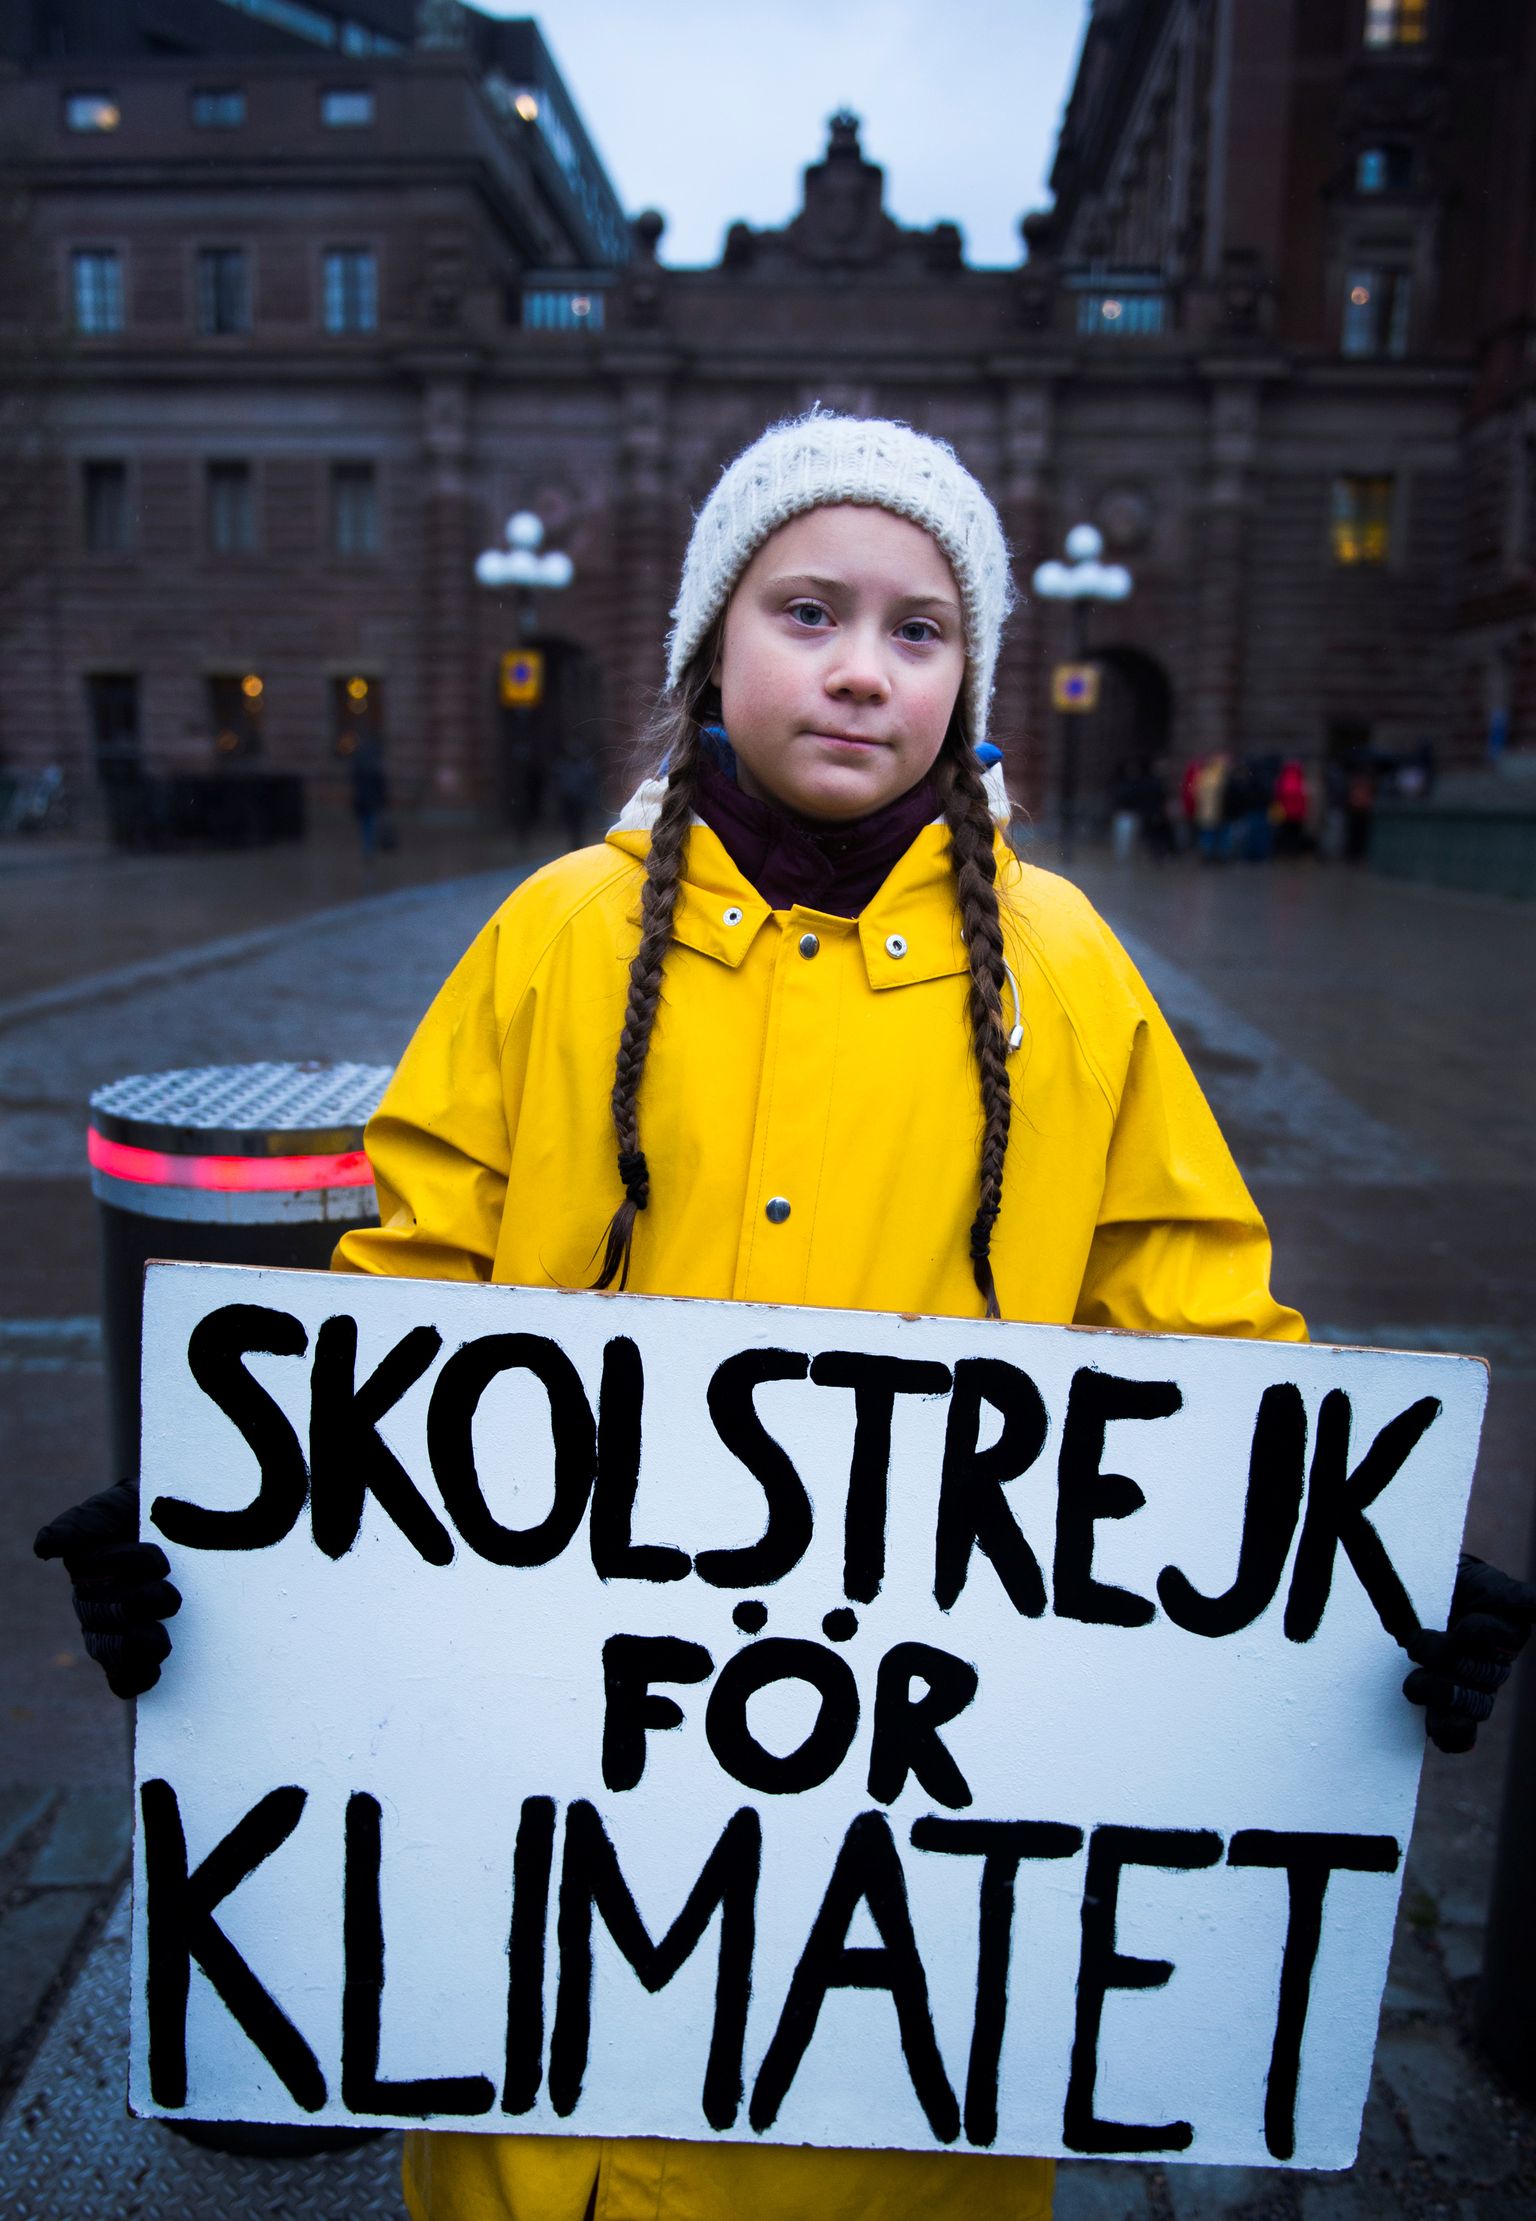 15-aastane Greta Thunberg protestimas 30. novembril 2018 Stockholmis parlamendihoone juures